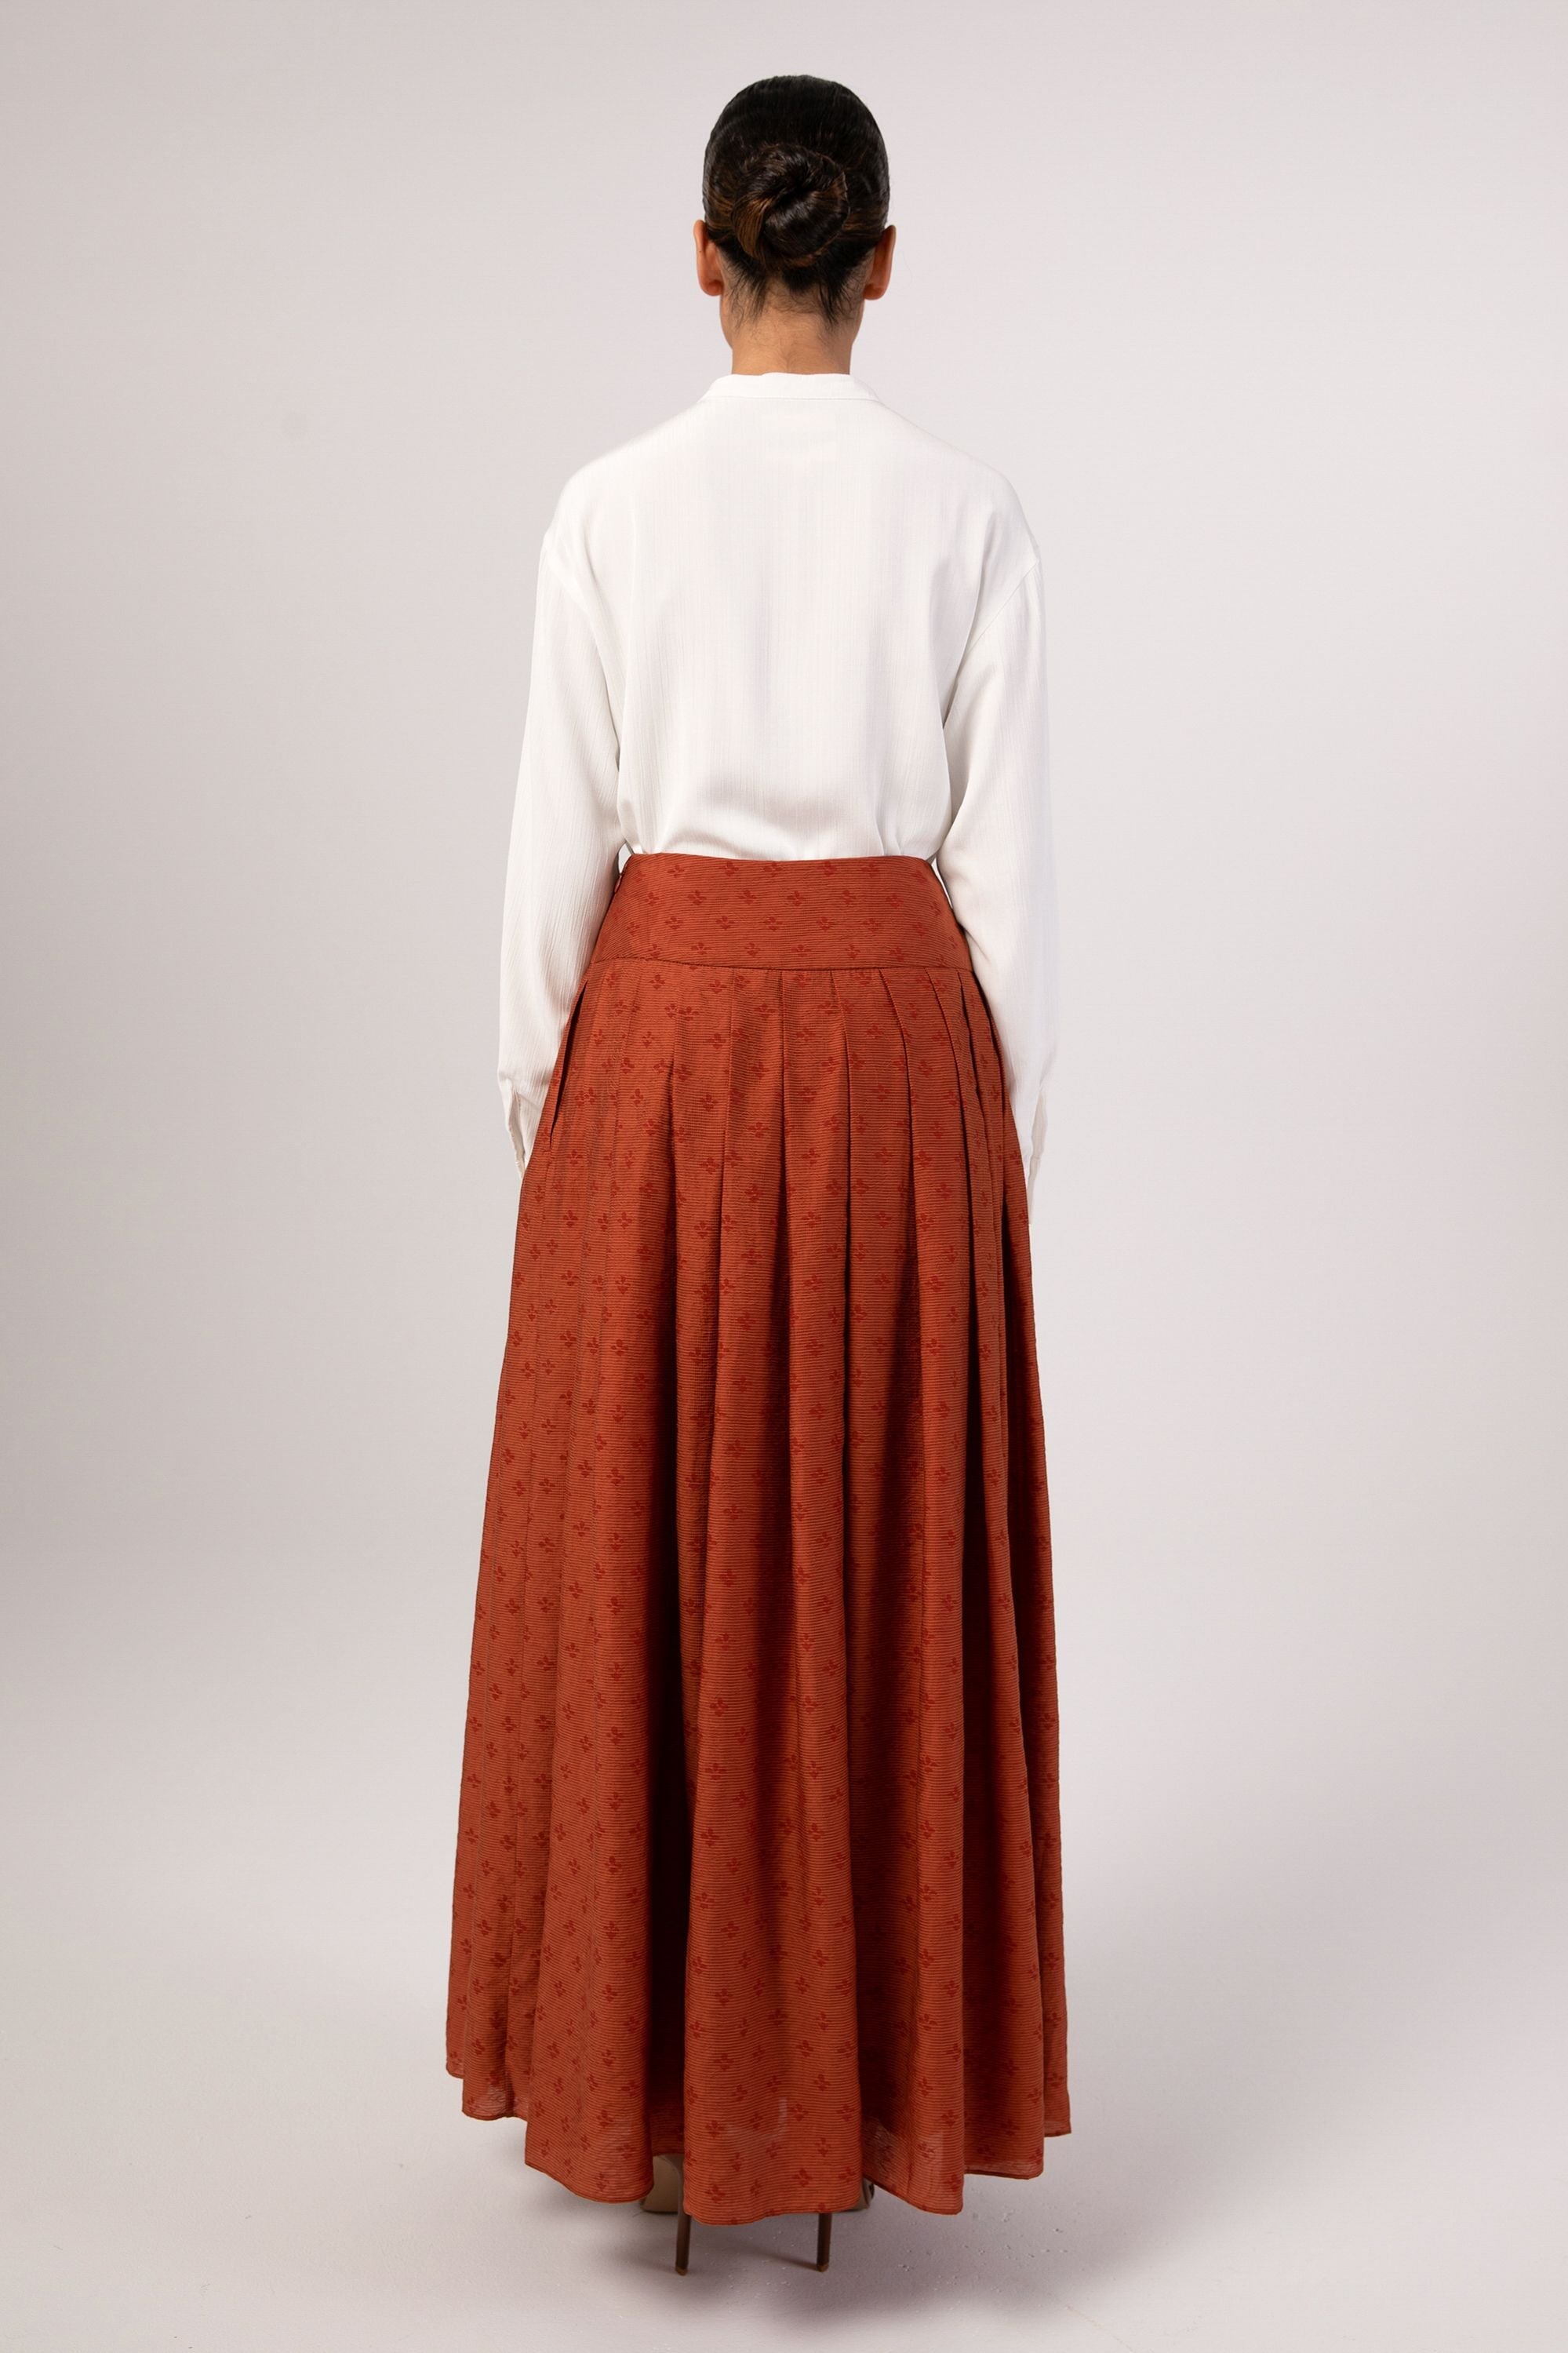 Yasmine Monochrome Floral Pleated Maxi Skirt - Baked Clay Veiled 